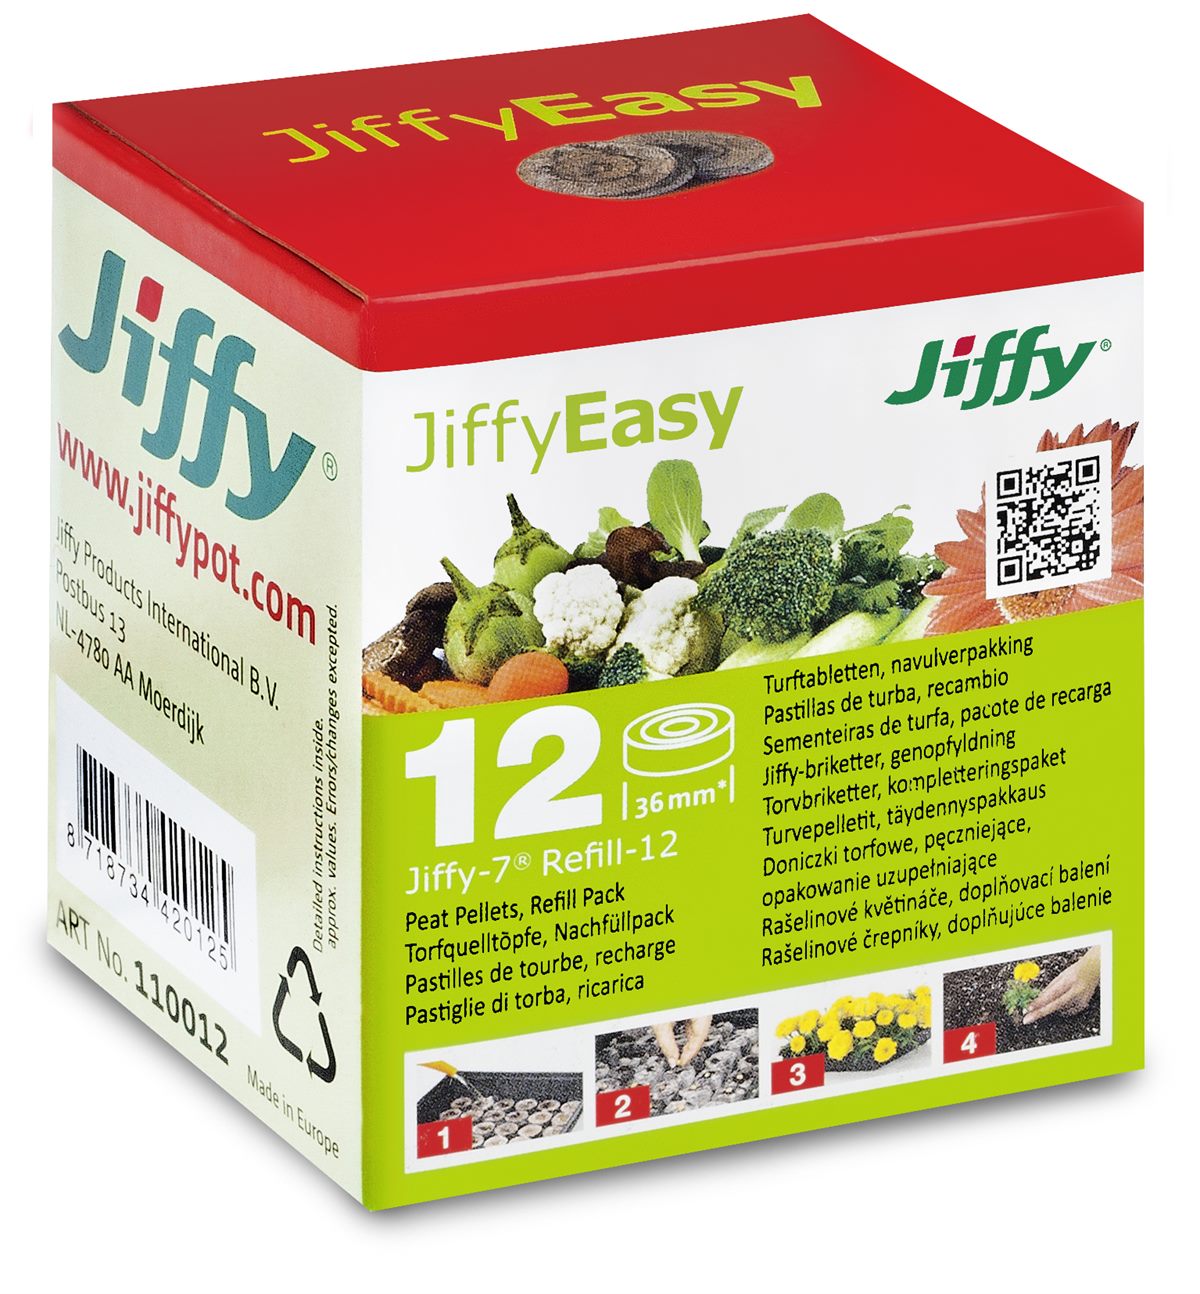 Jiffy-7 Refill Quelltöpfe 12 - UVP 2,49 EUR